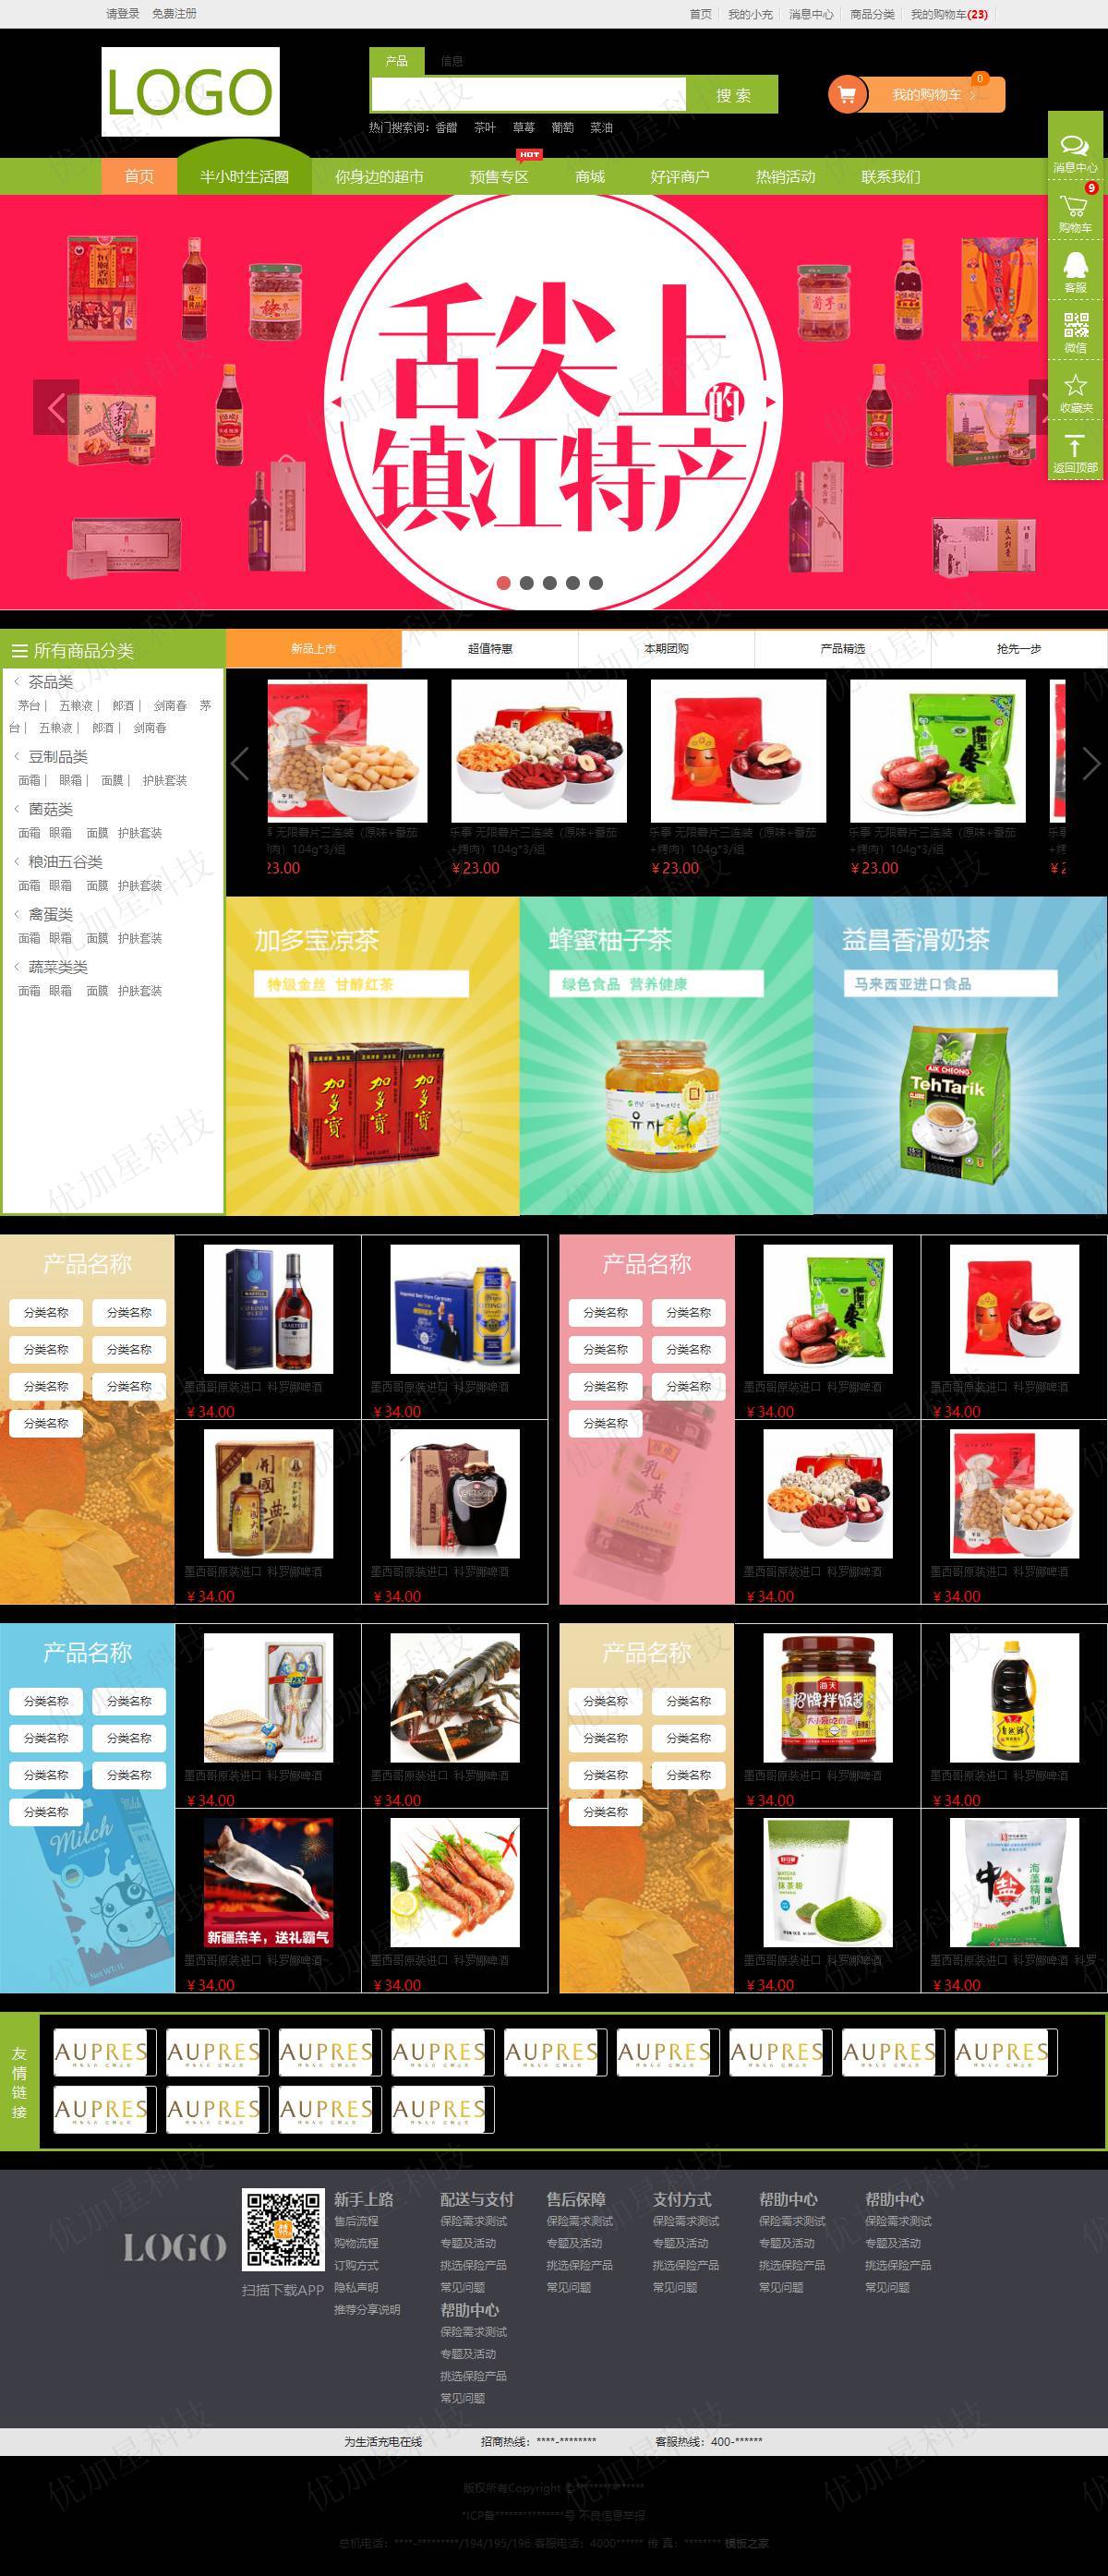 流畅网上购物食品超市通用模板下载_优加星网络科技